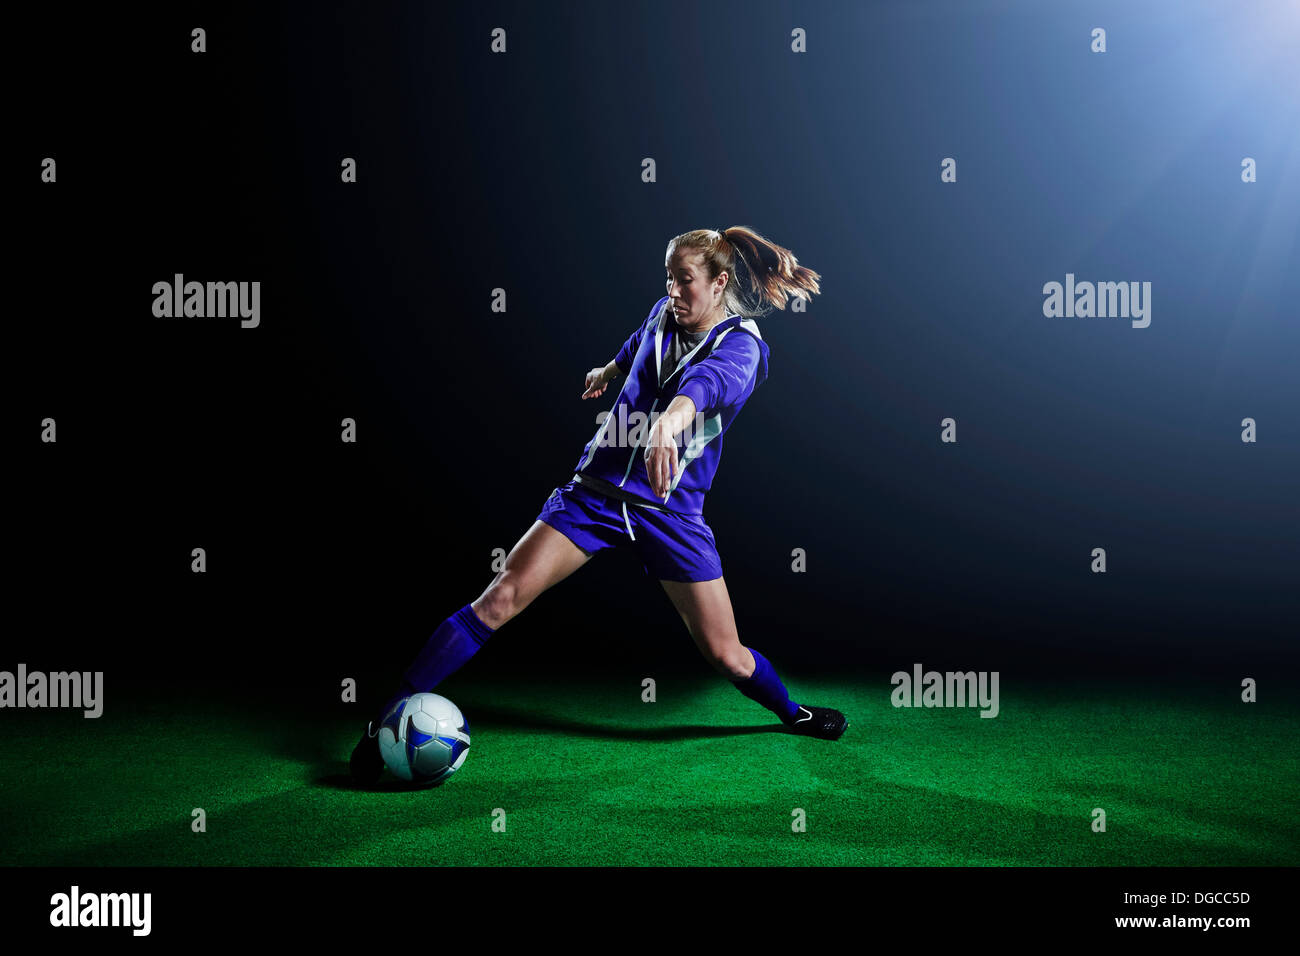 Jeune joueur de soccer féminin balle dribble Banque D'Images